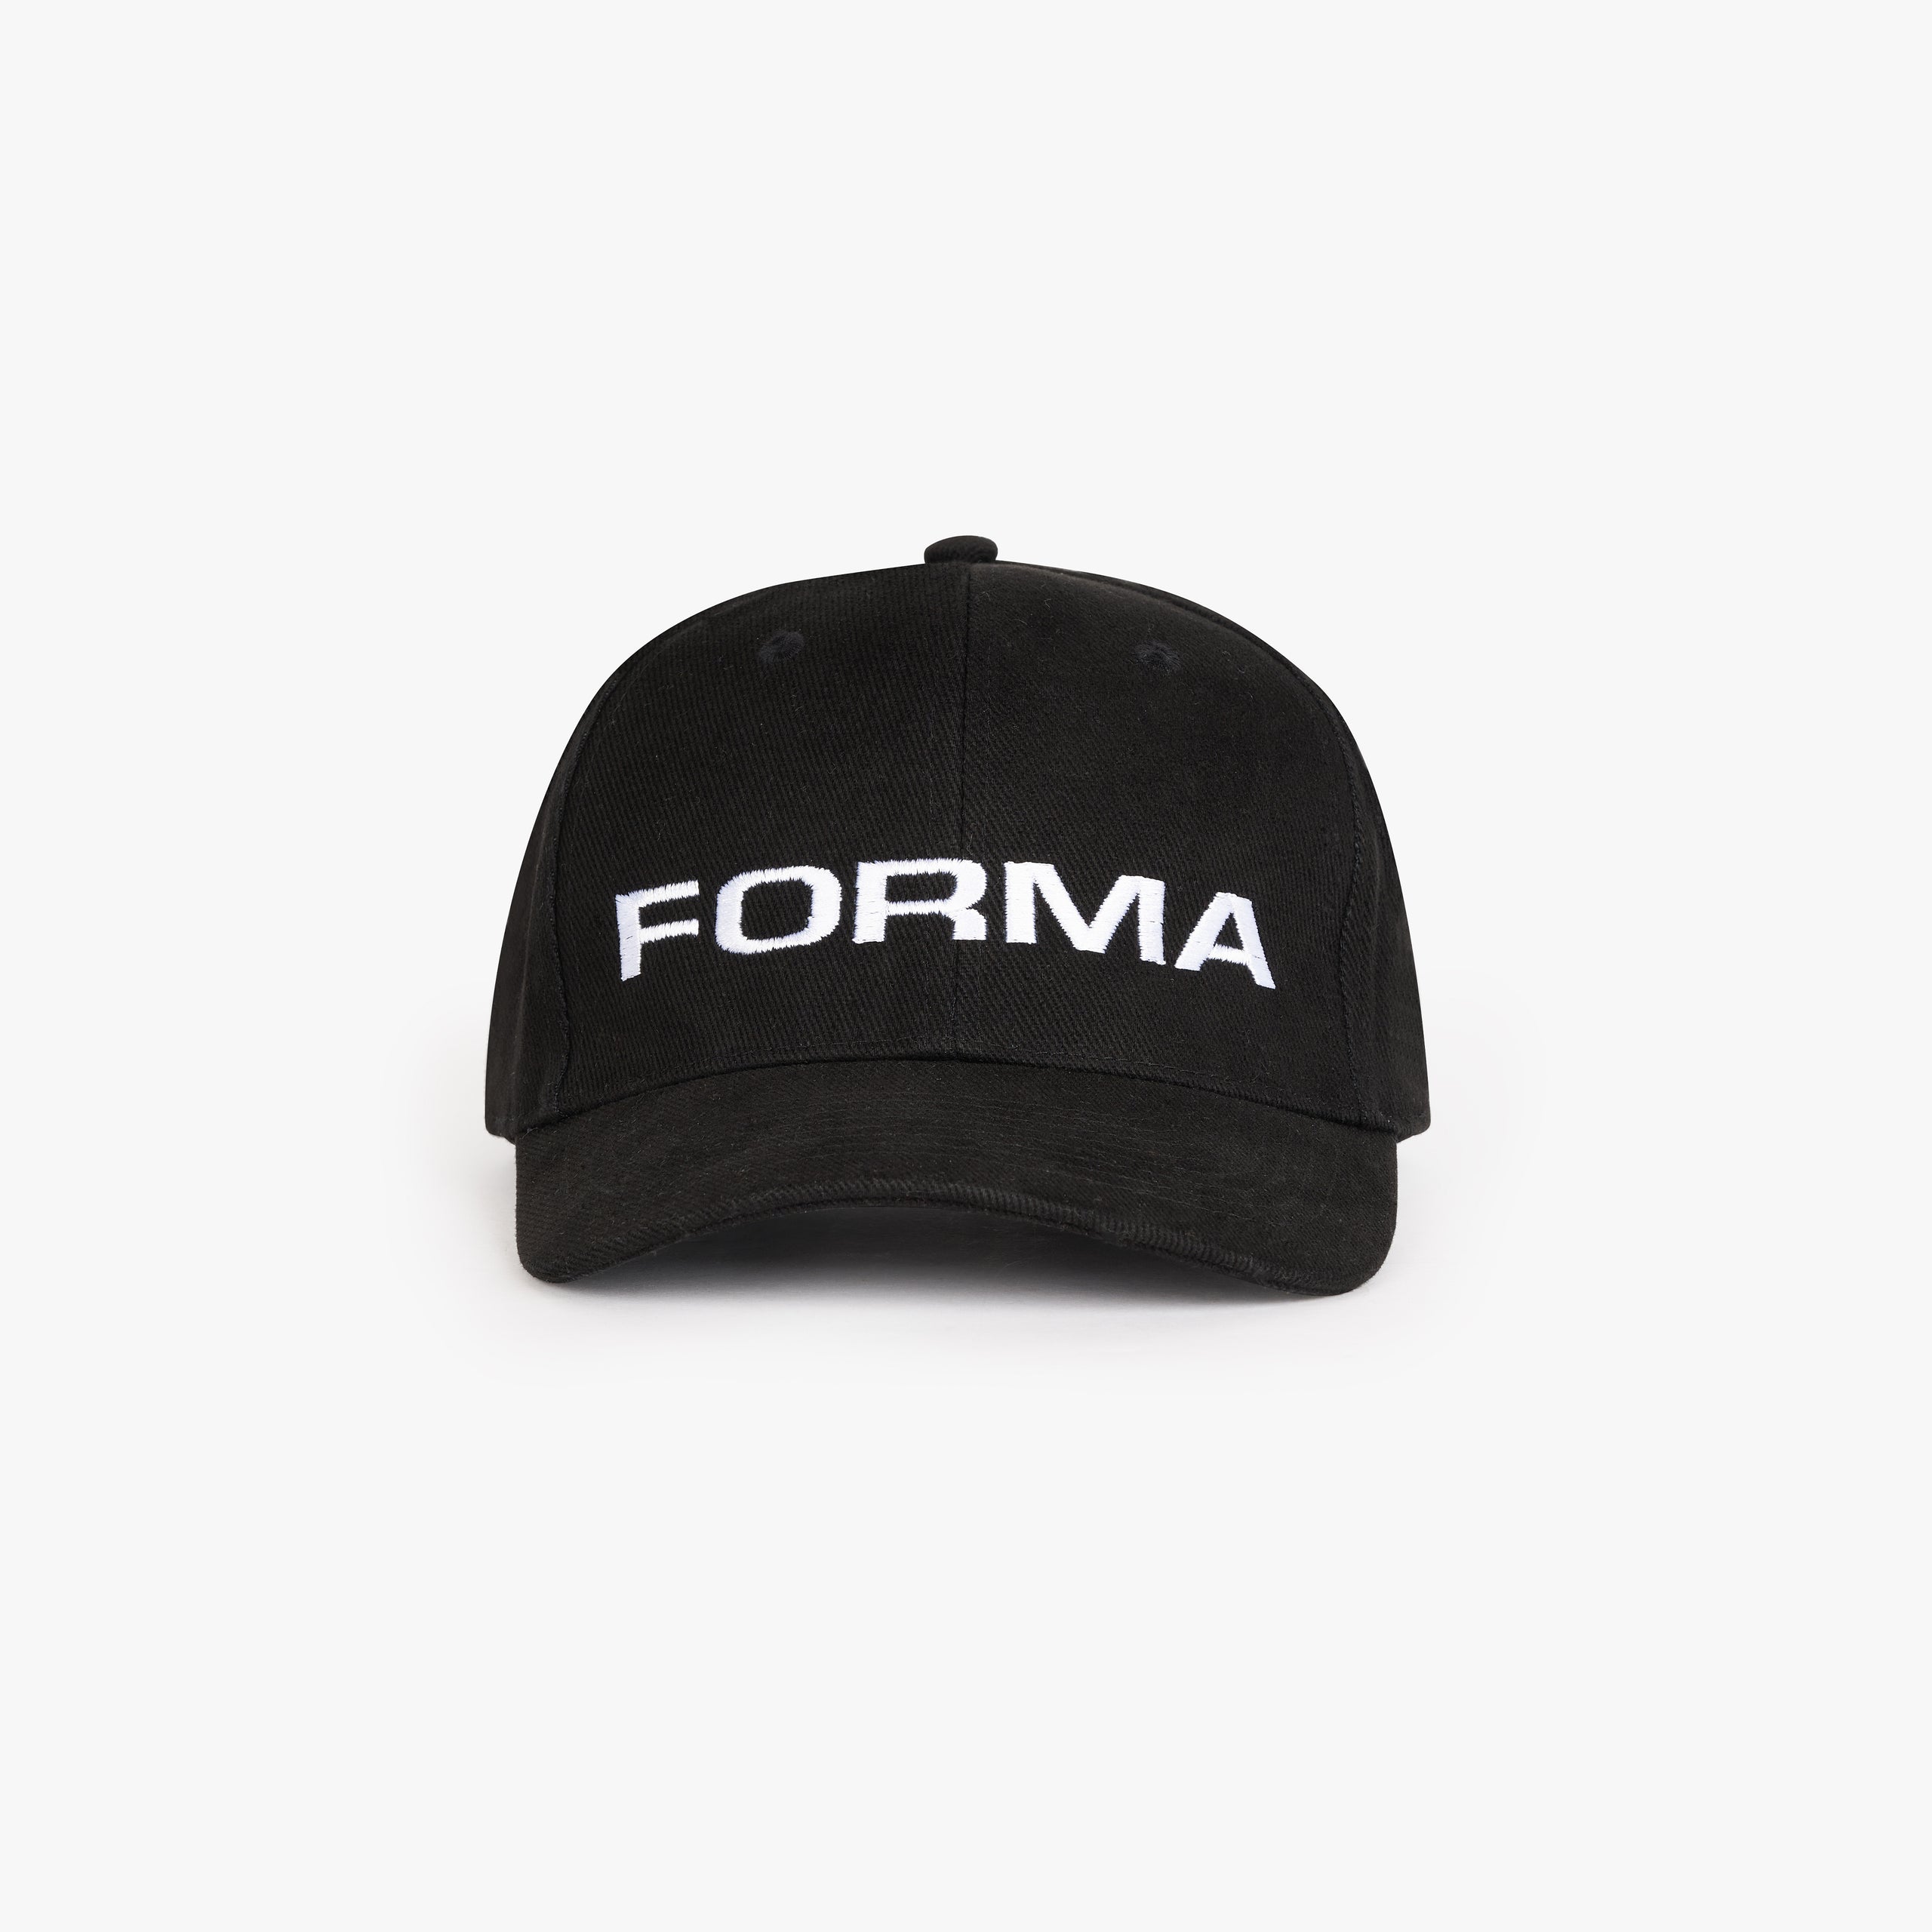 Forma classic cap black